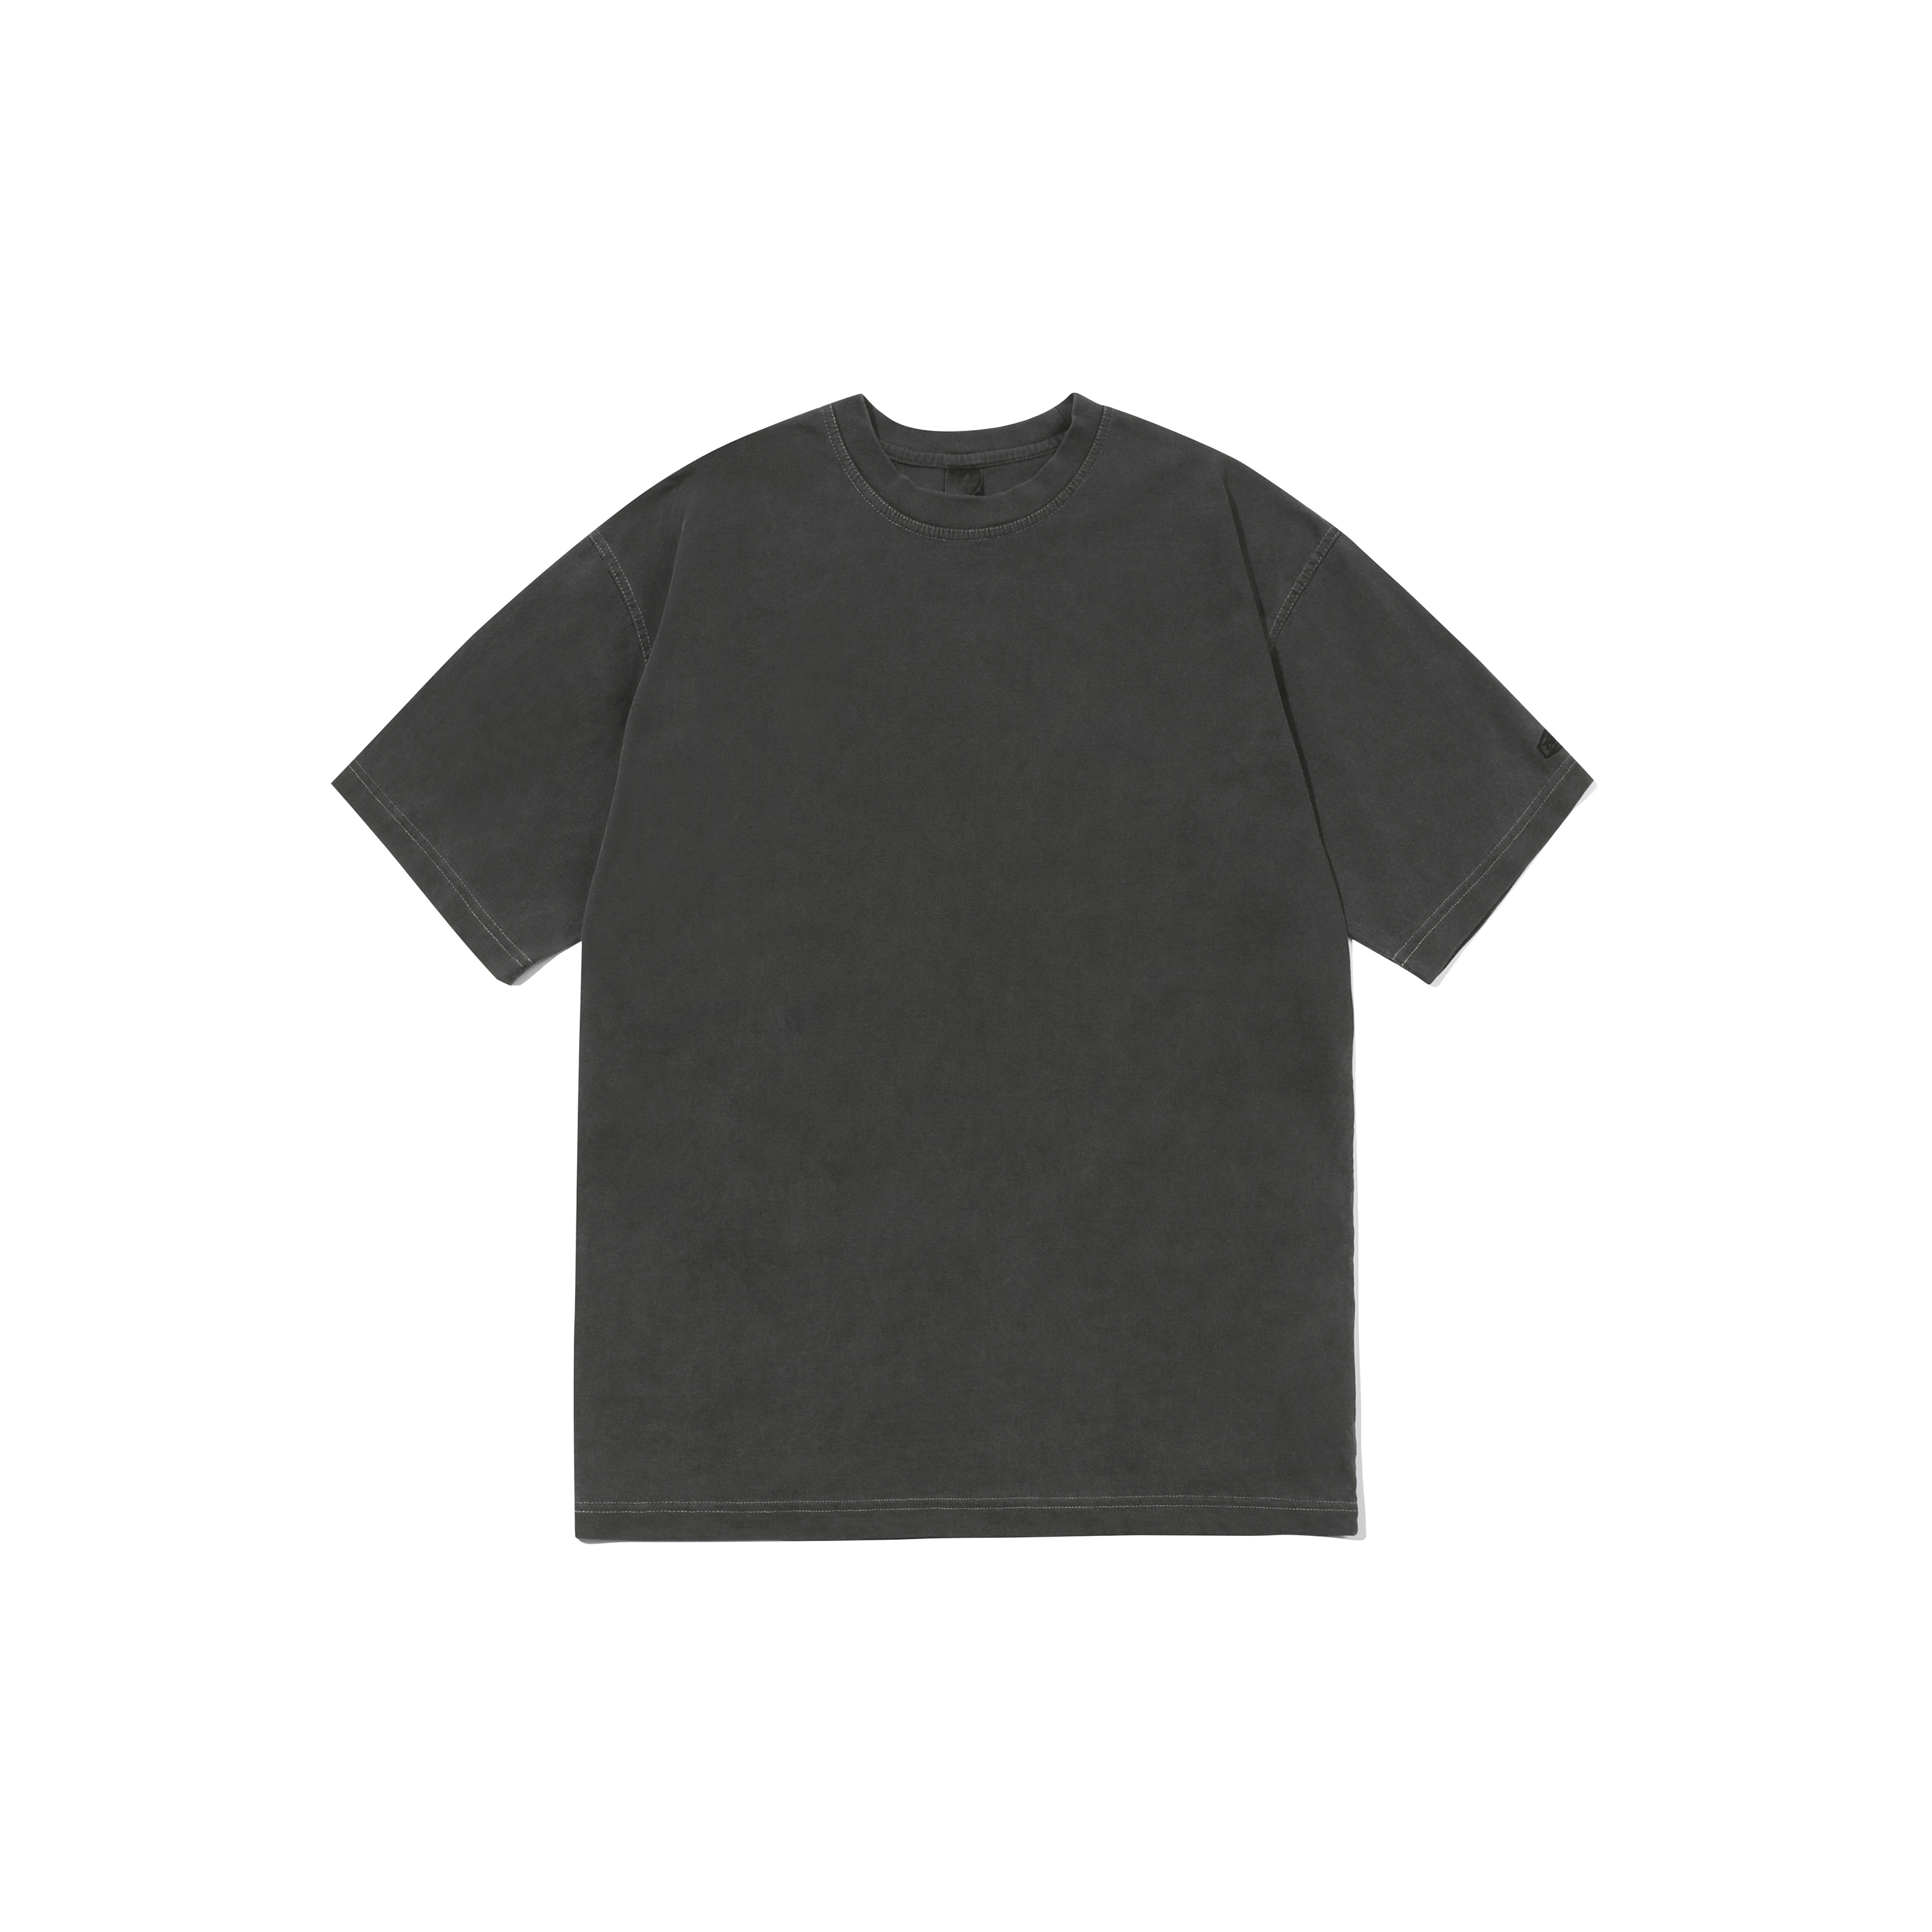 Pigment t-shirt dark gray